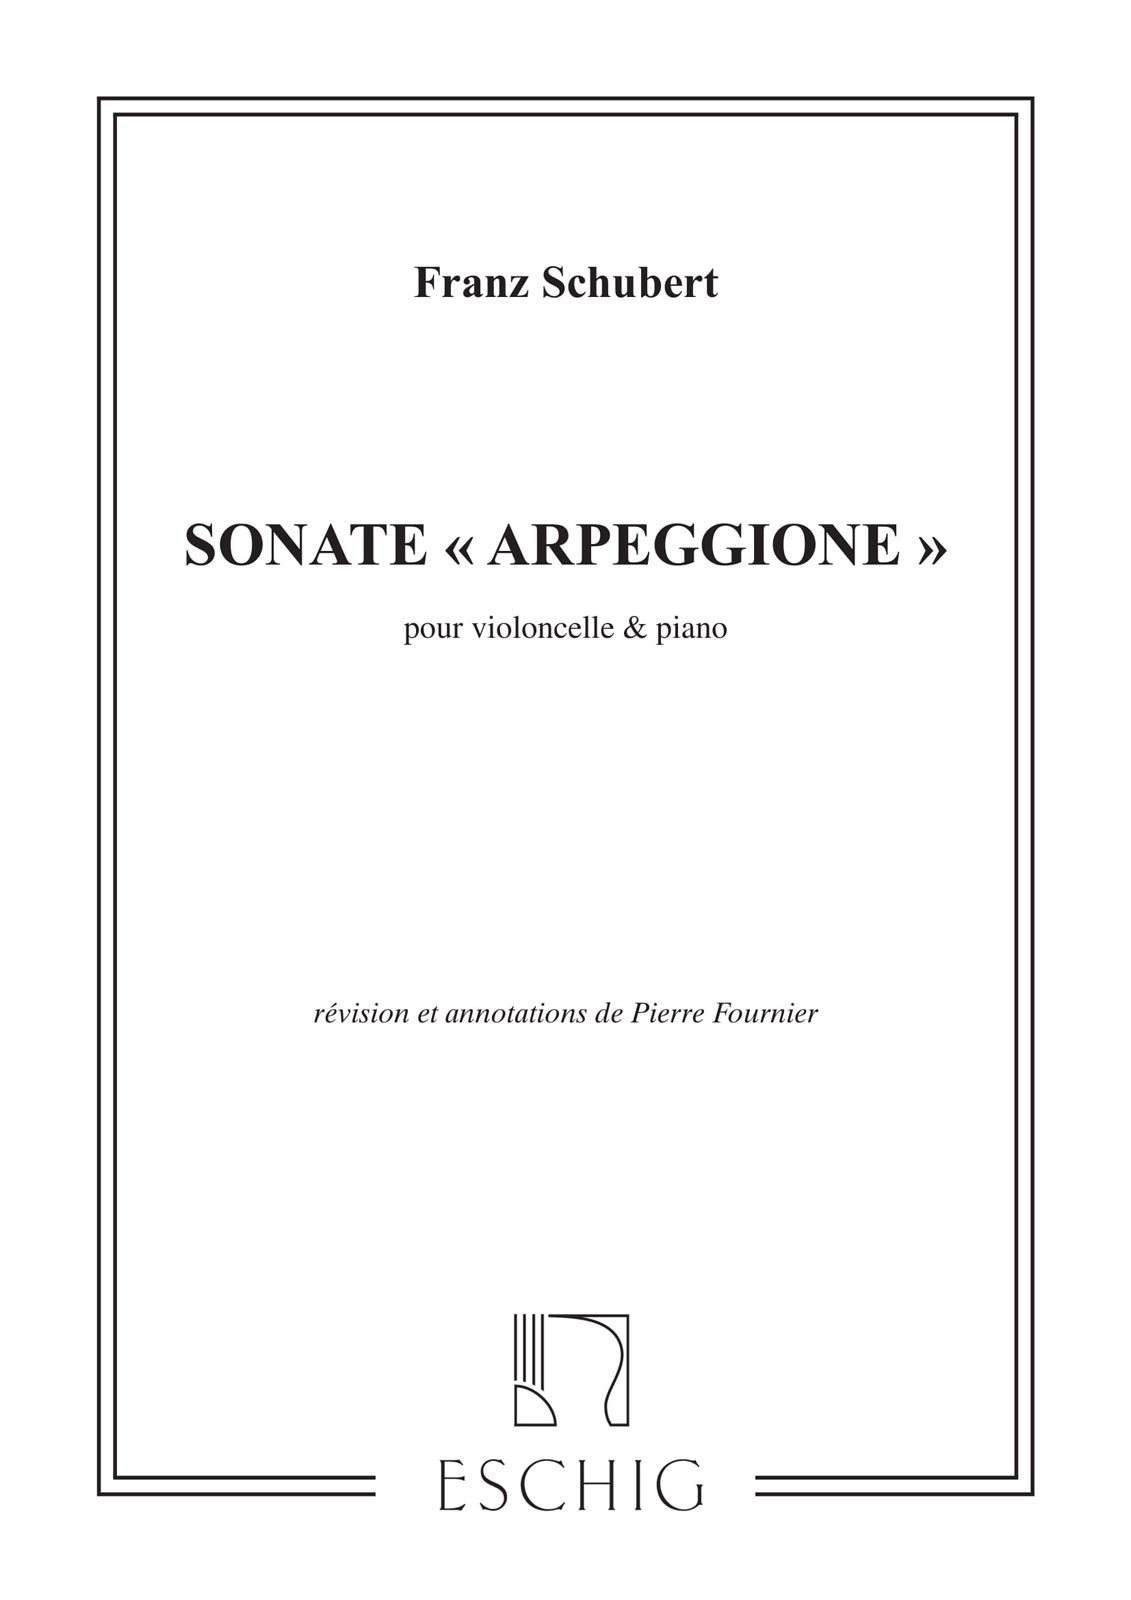 EDITION MAX ESCHIG SCHUBERT F. - SONATE ARPEGGIONE - VIOLONCELLE ET PIANO